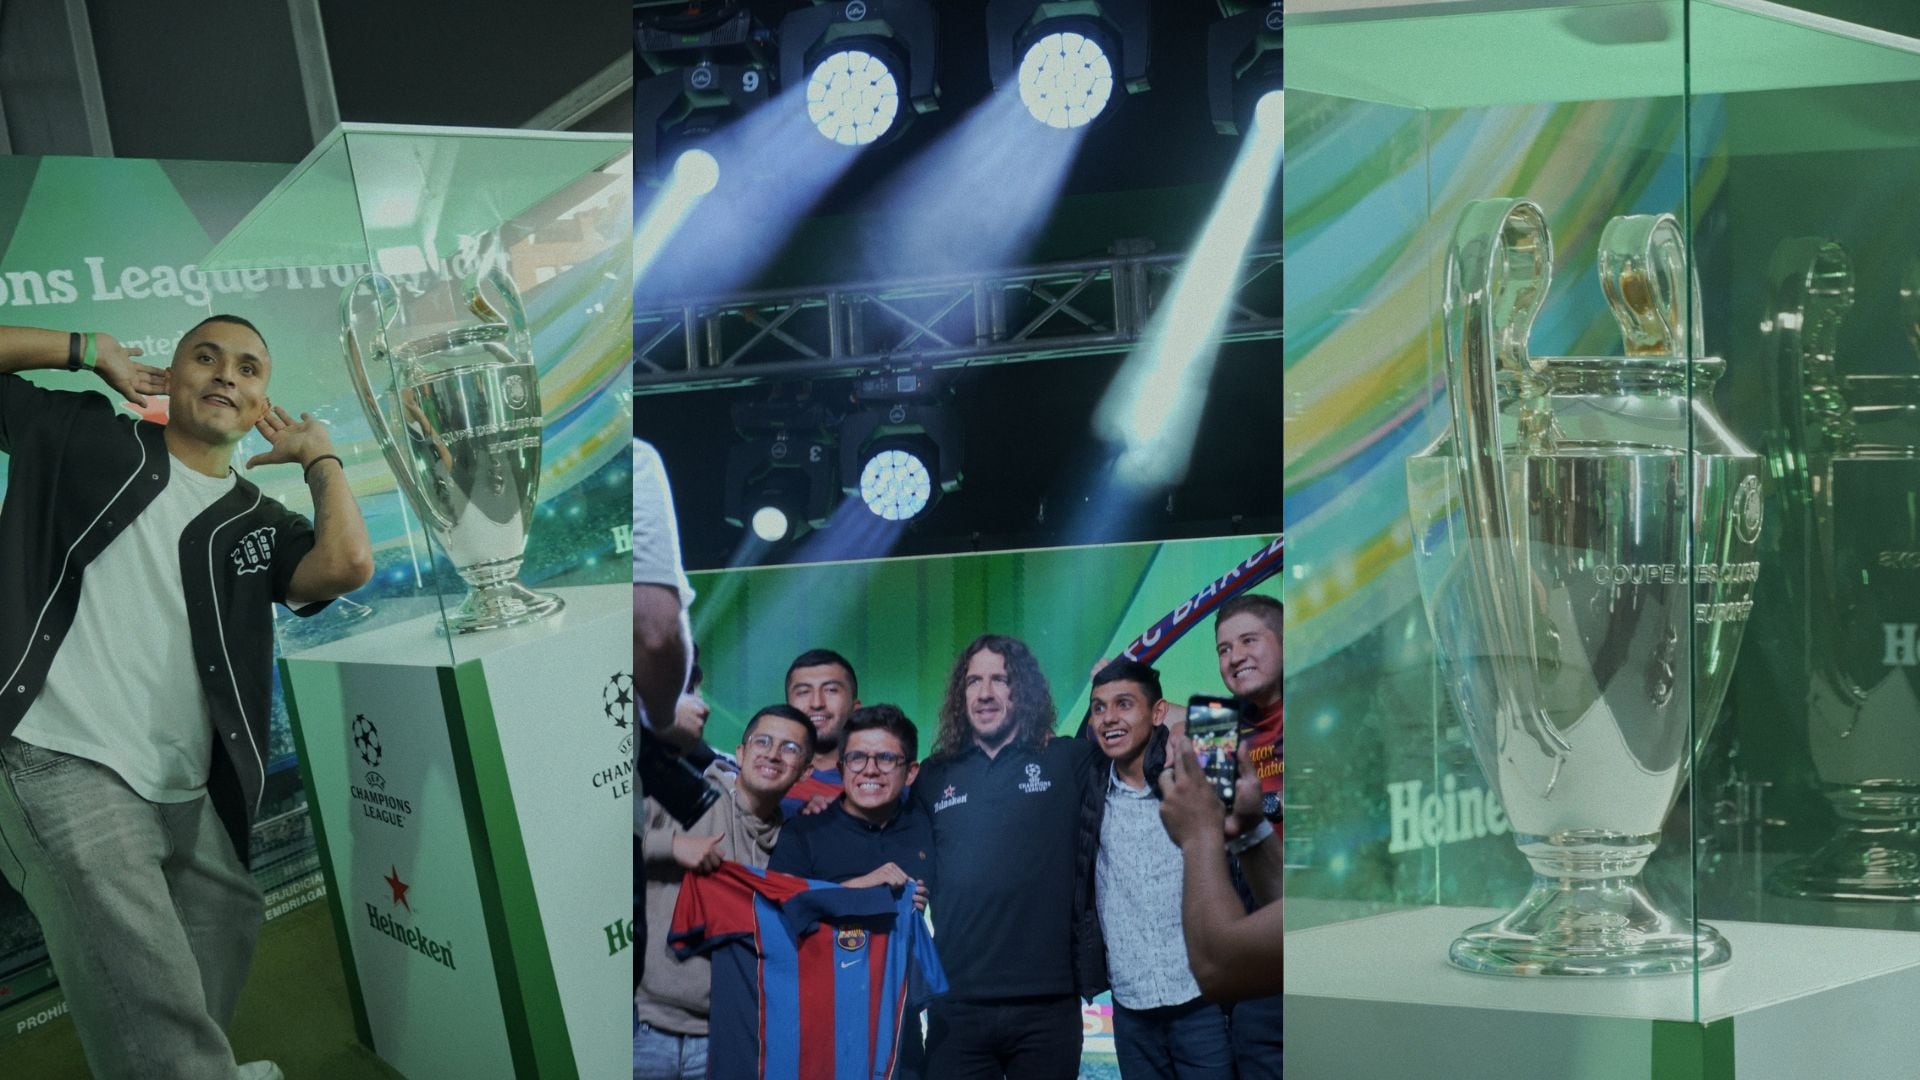 Evento Heineken con la UEFA Champions League en Colombia